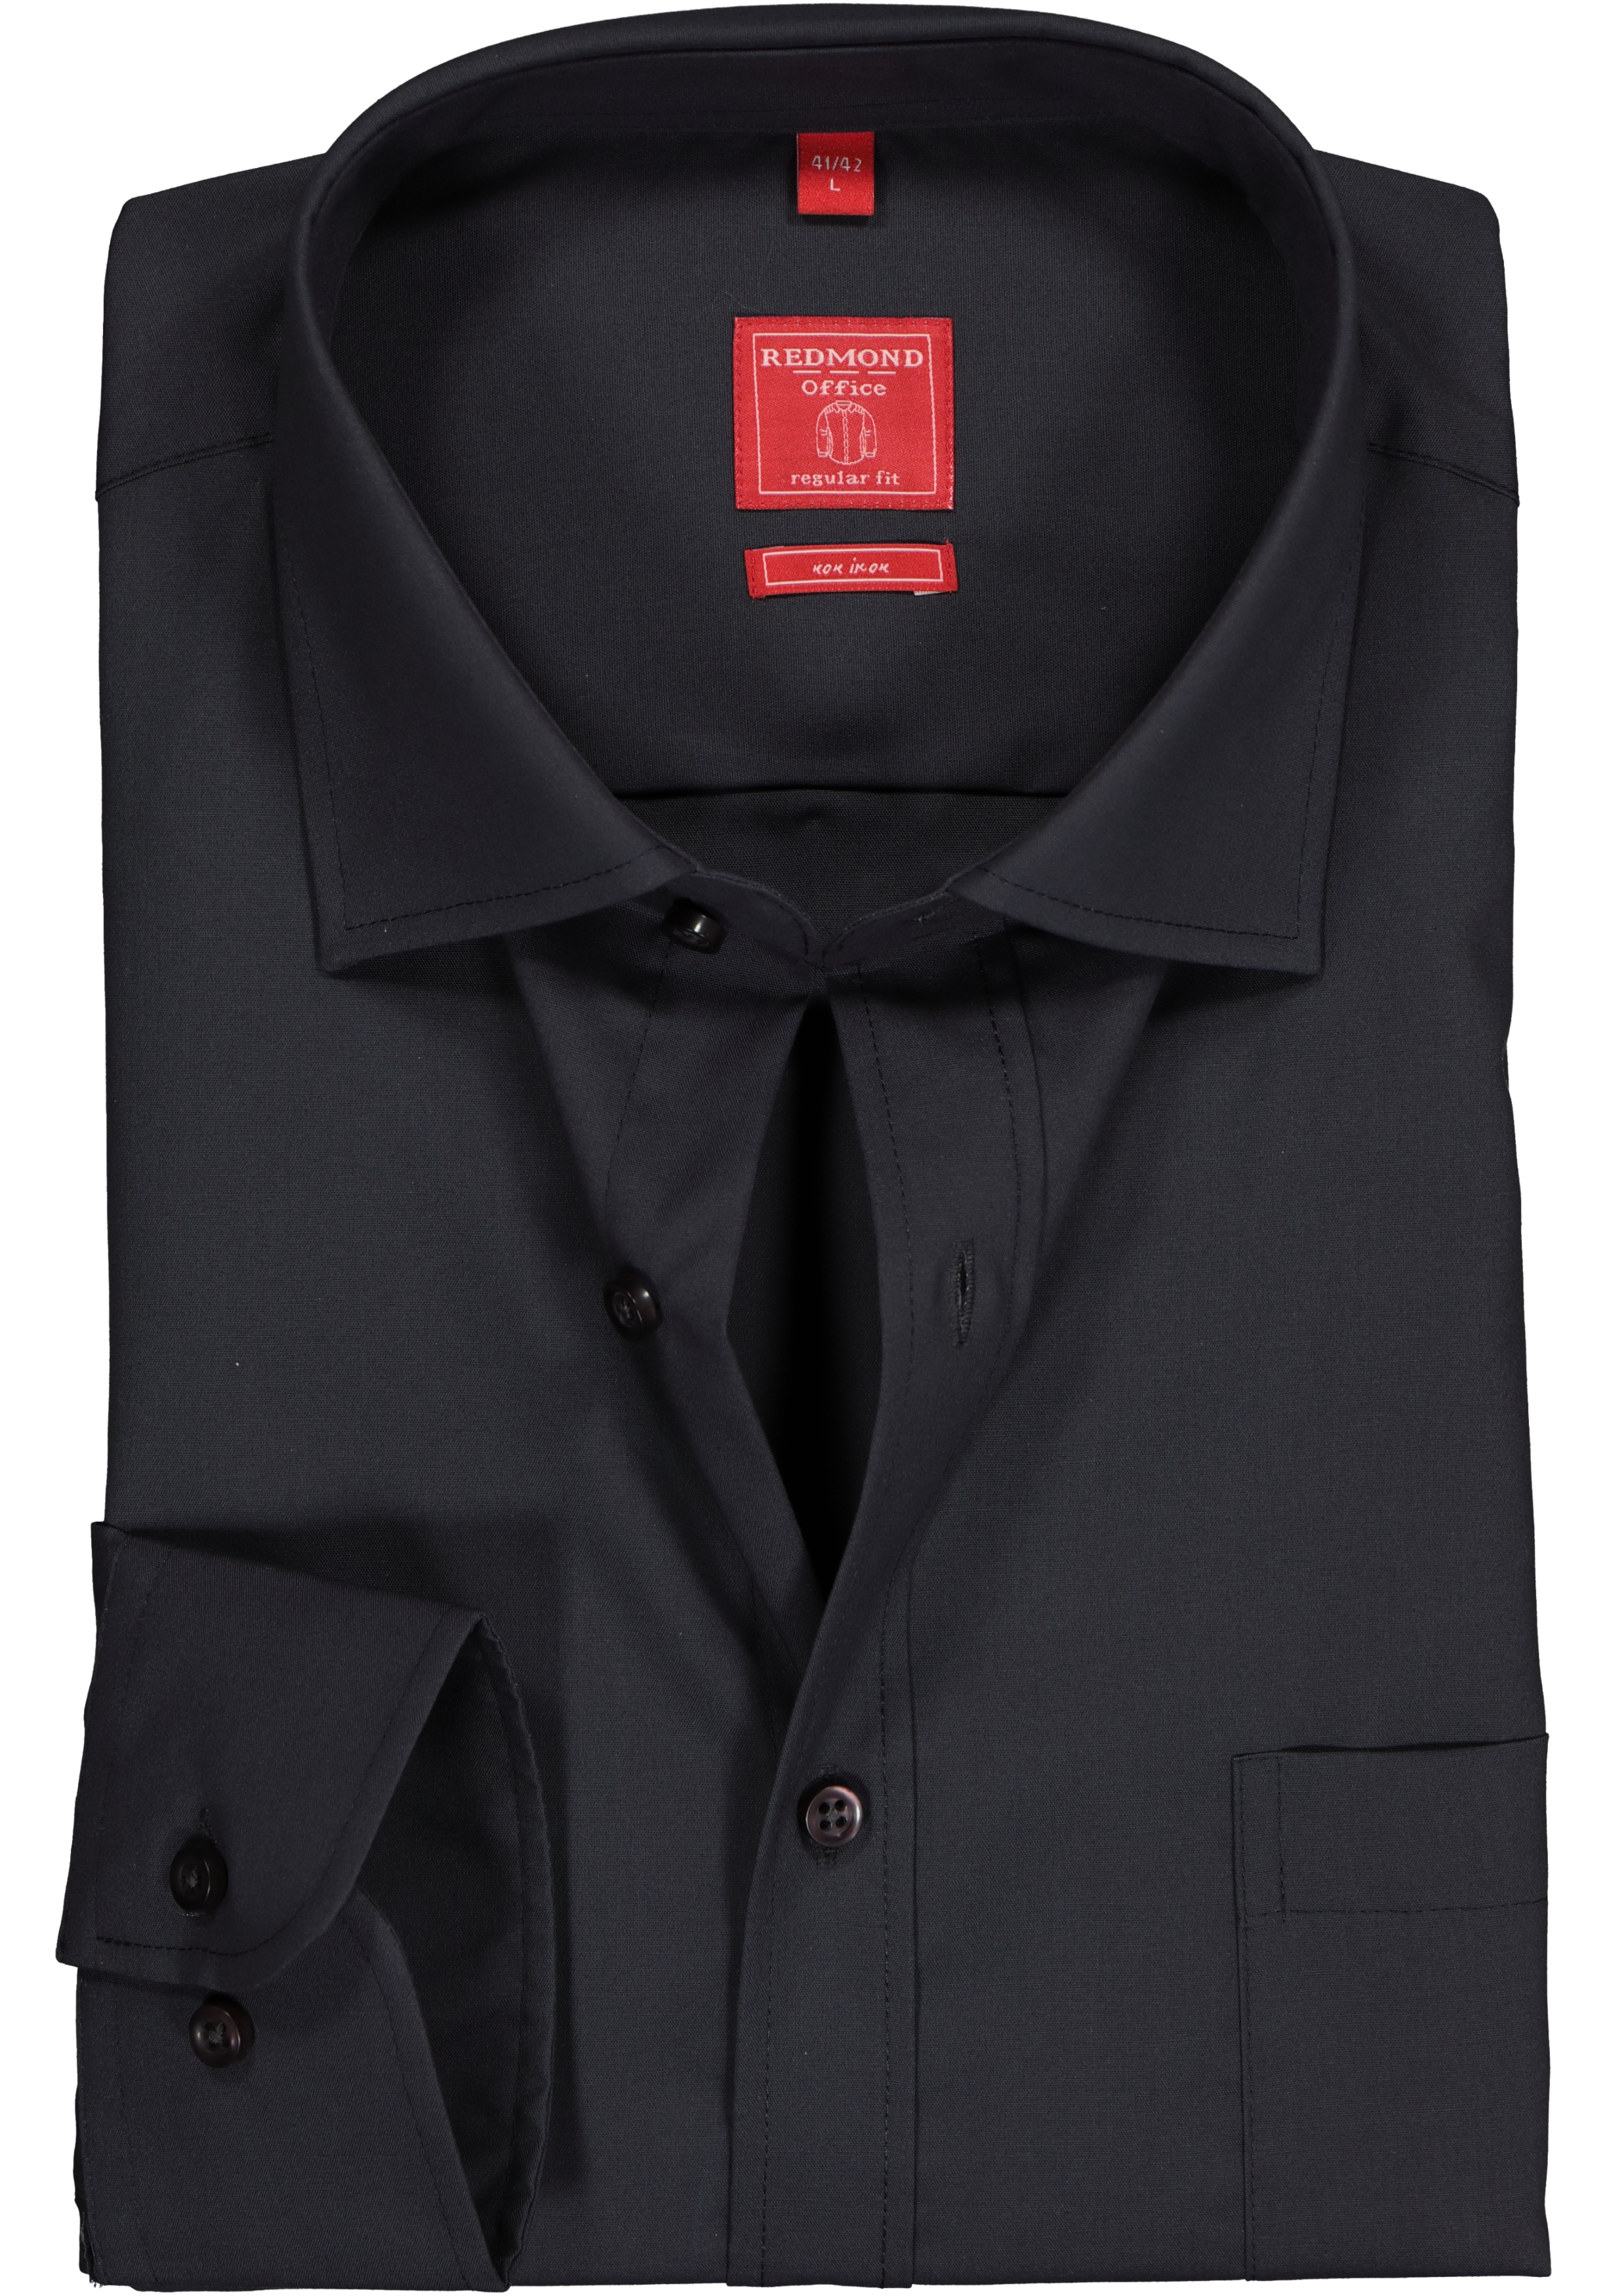 Redmond regular fit overhemd, antraciet grijs